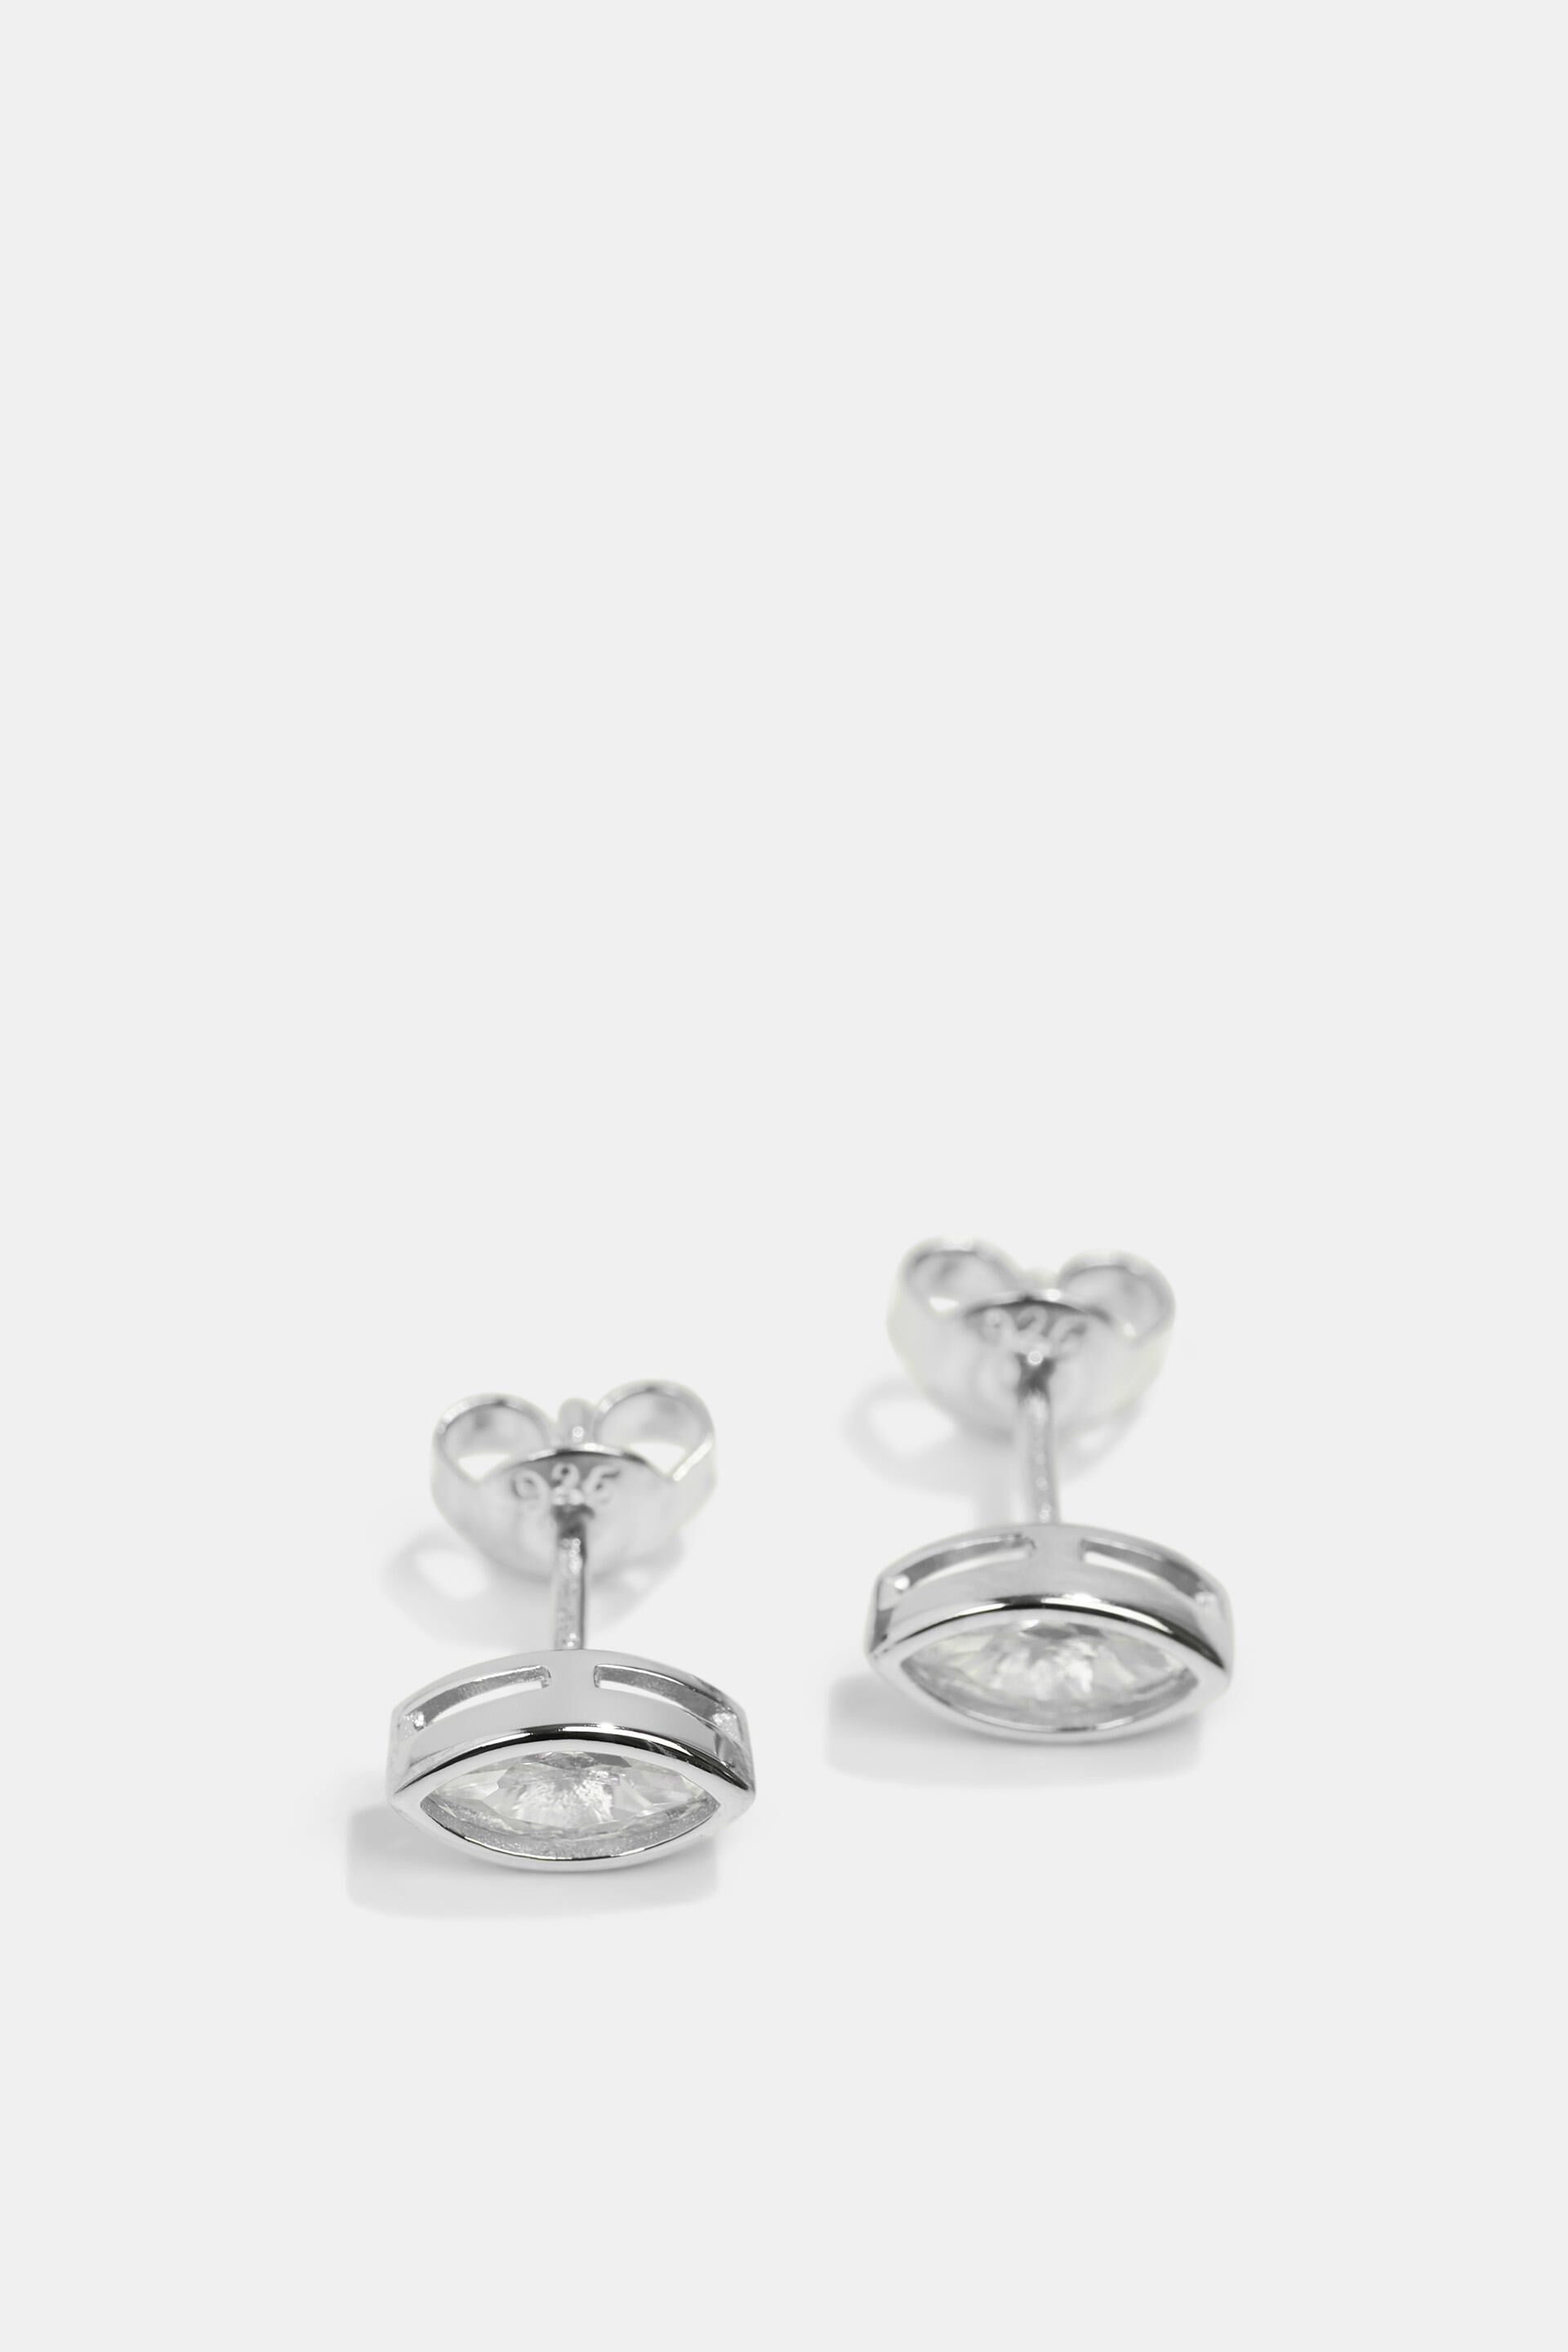 Rabatt 68 % Silber M Sin Receta Symmetrischer Ring DAMEN Accessoires Modeschmuckset Silber Größe M 